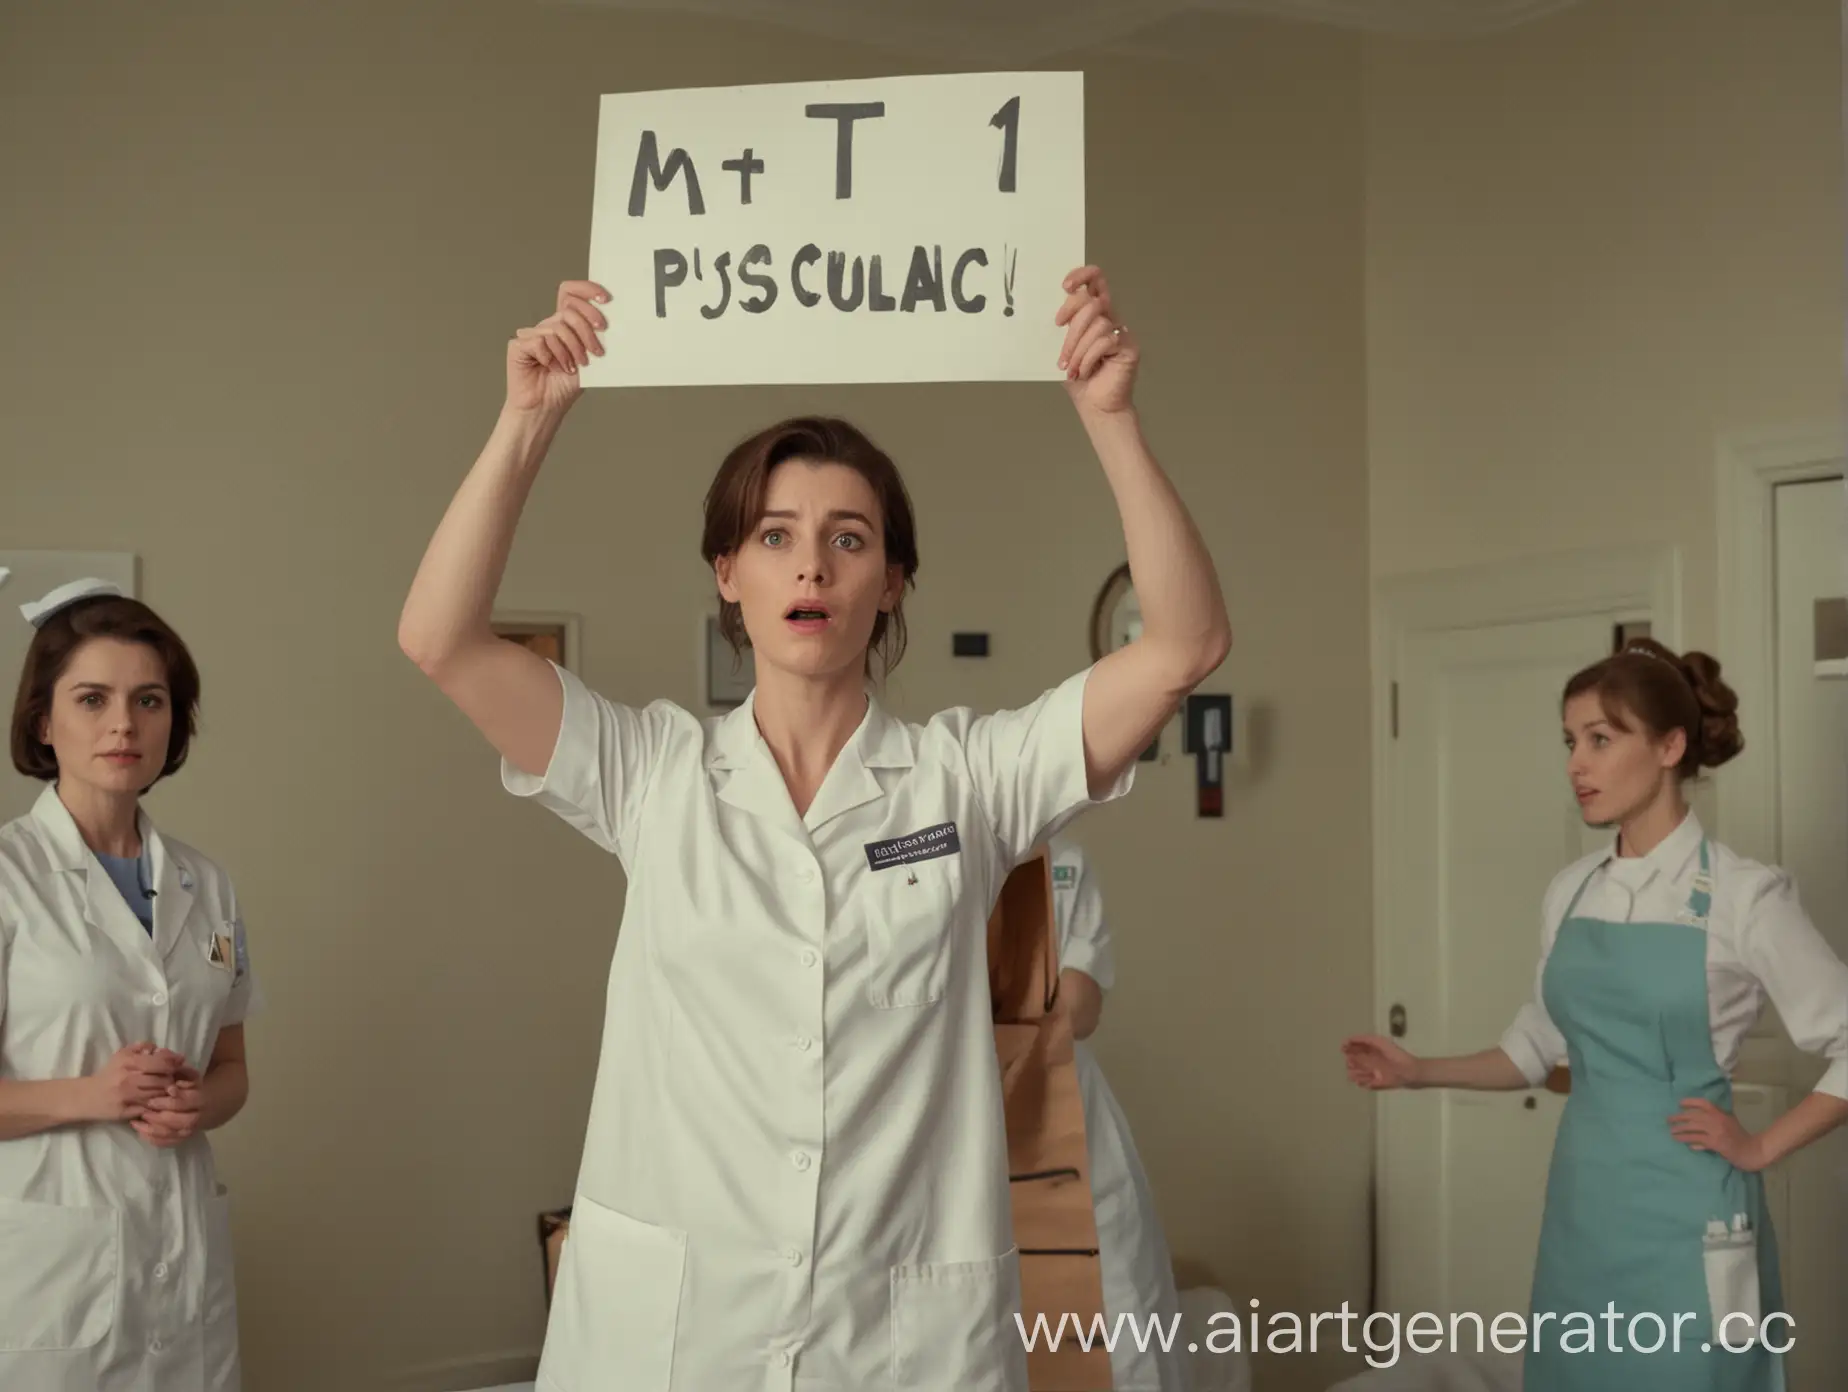 В центре кадра находится псих, находящийся в изоляторе. Справа от него, на заднем фоне, медсестра держит табличку, на которой написано "1". Слева на заднем фоне медсестра держит другую табличку, где написано "М".